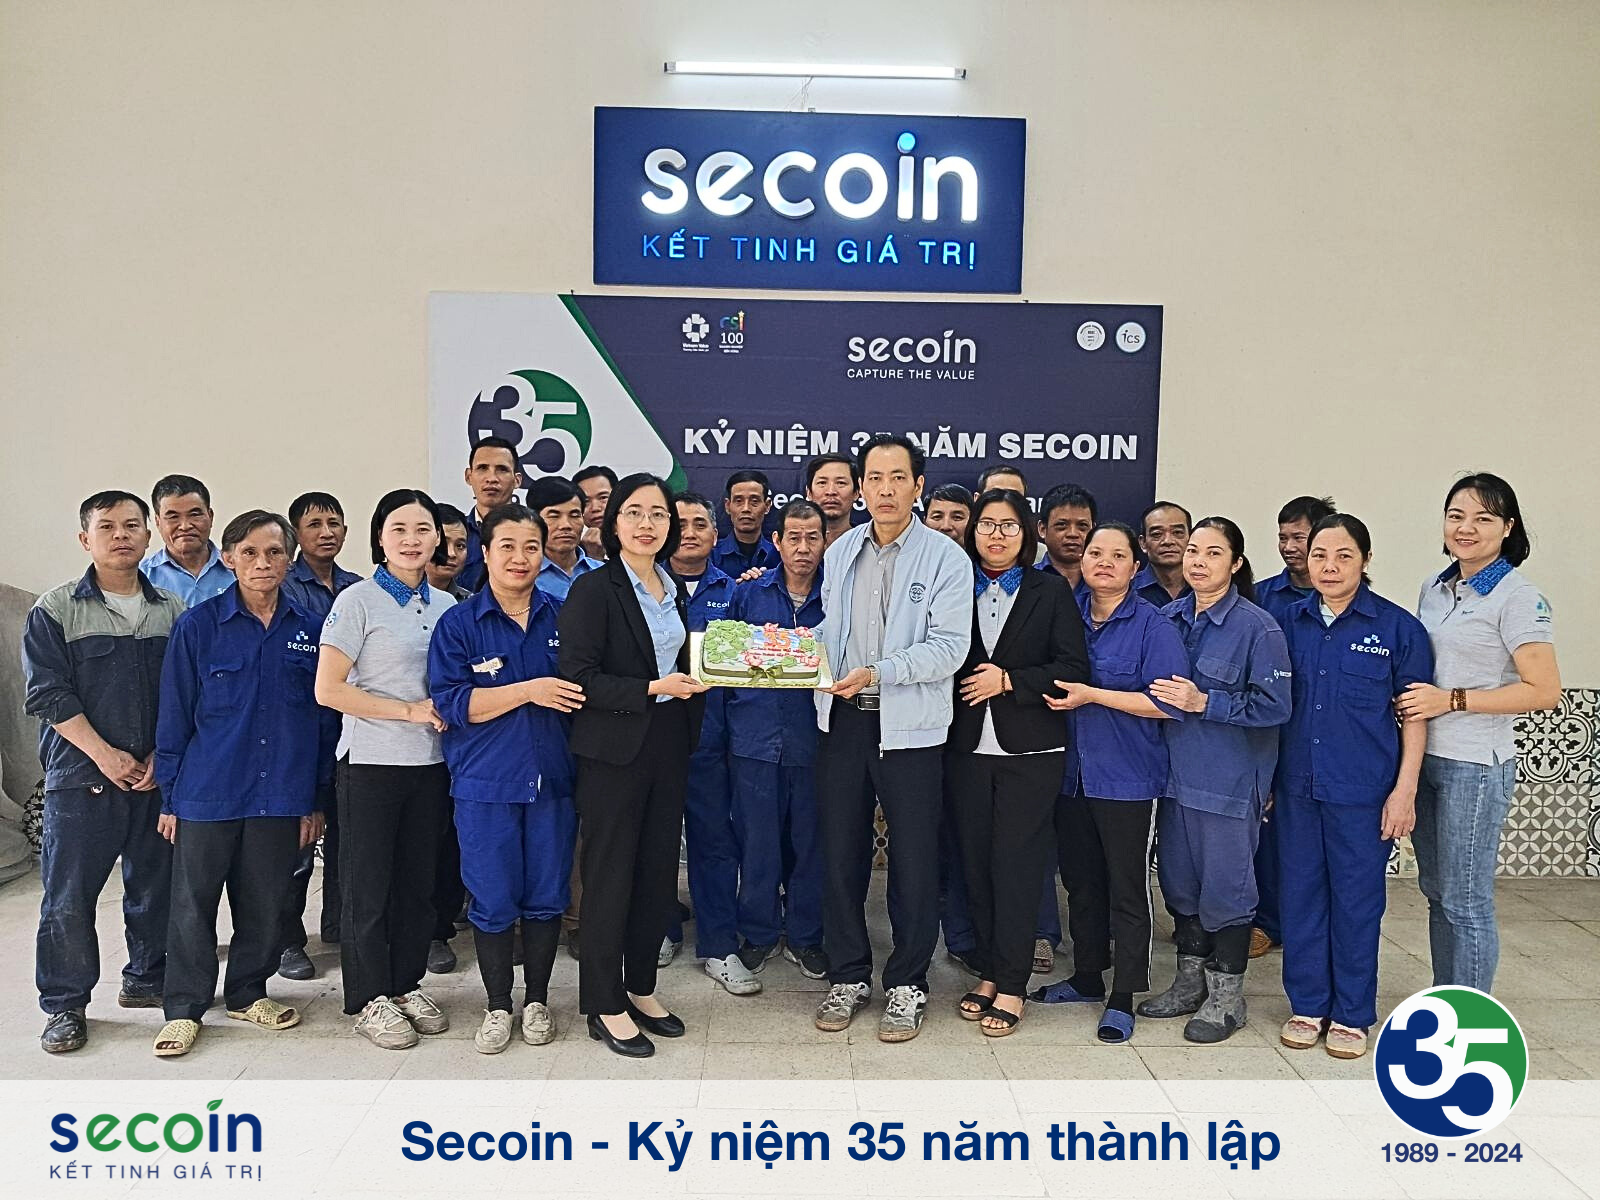 Secoin - Kỷ niệm 35 năm thành lập